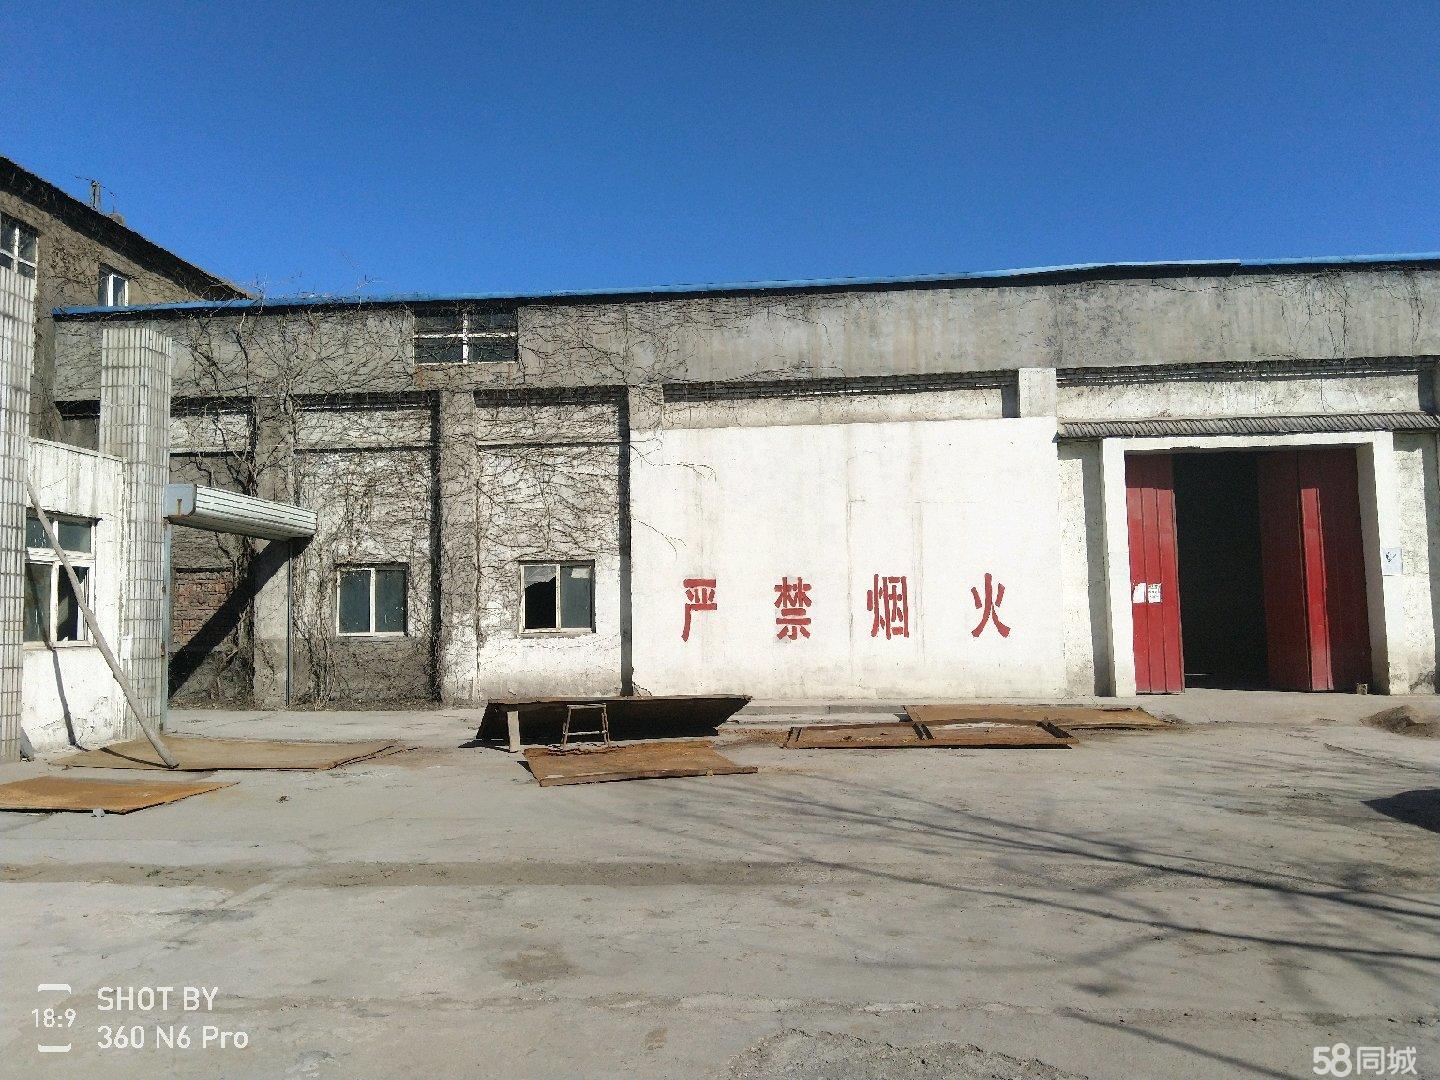 (出租) 莱城牛泉镇 厂房 出租出售 2000平米